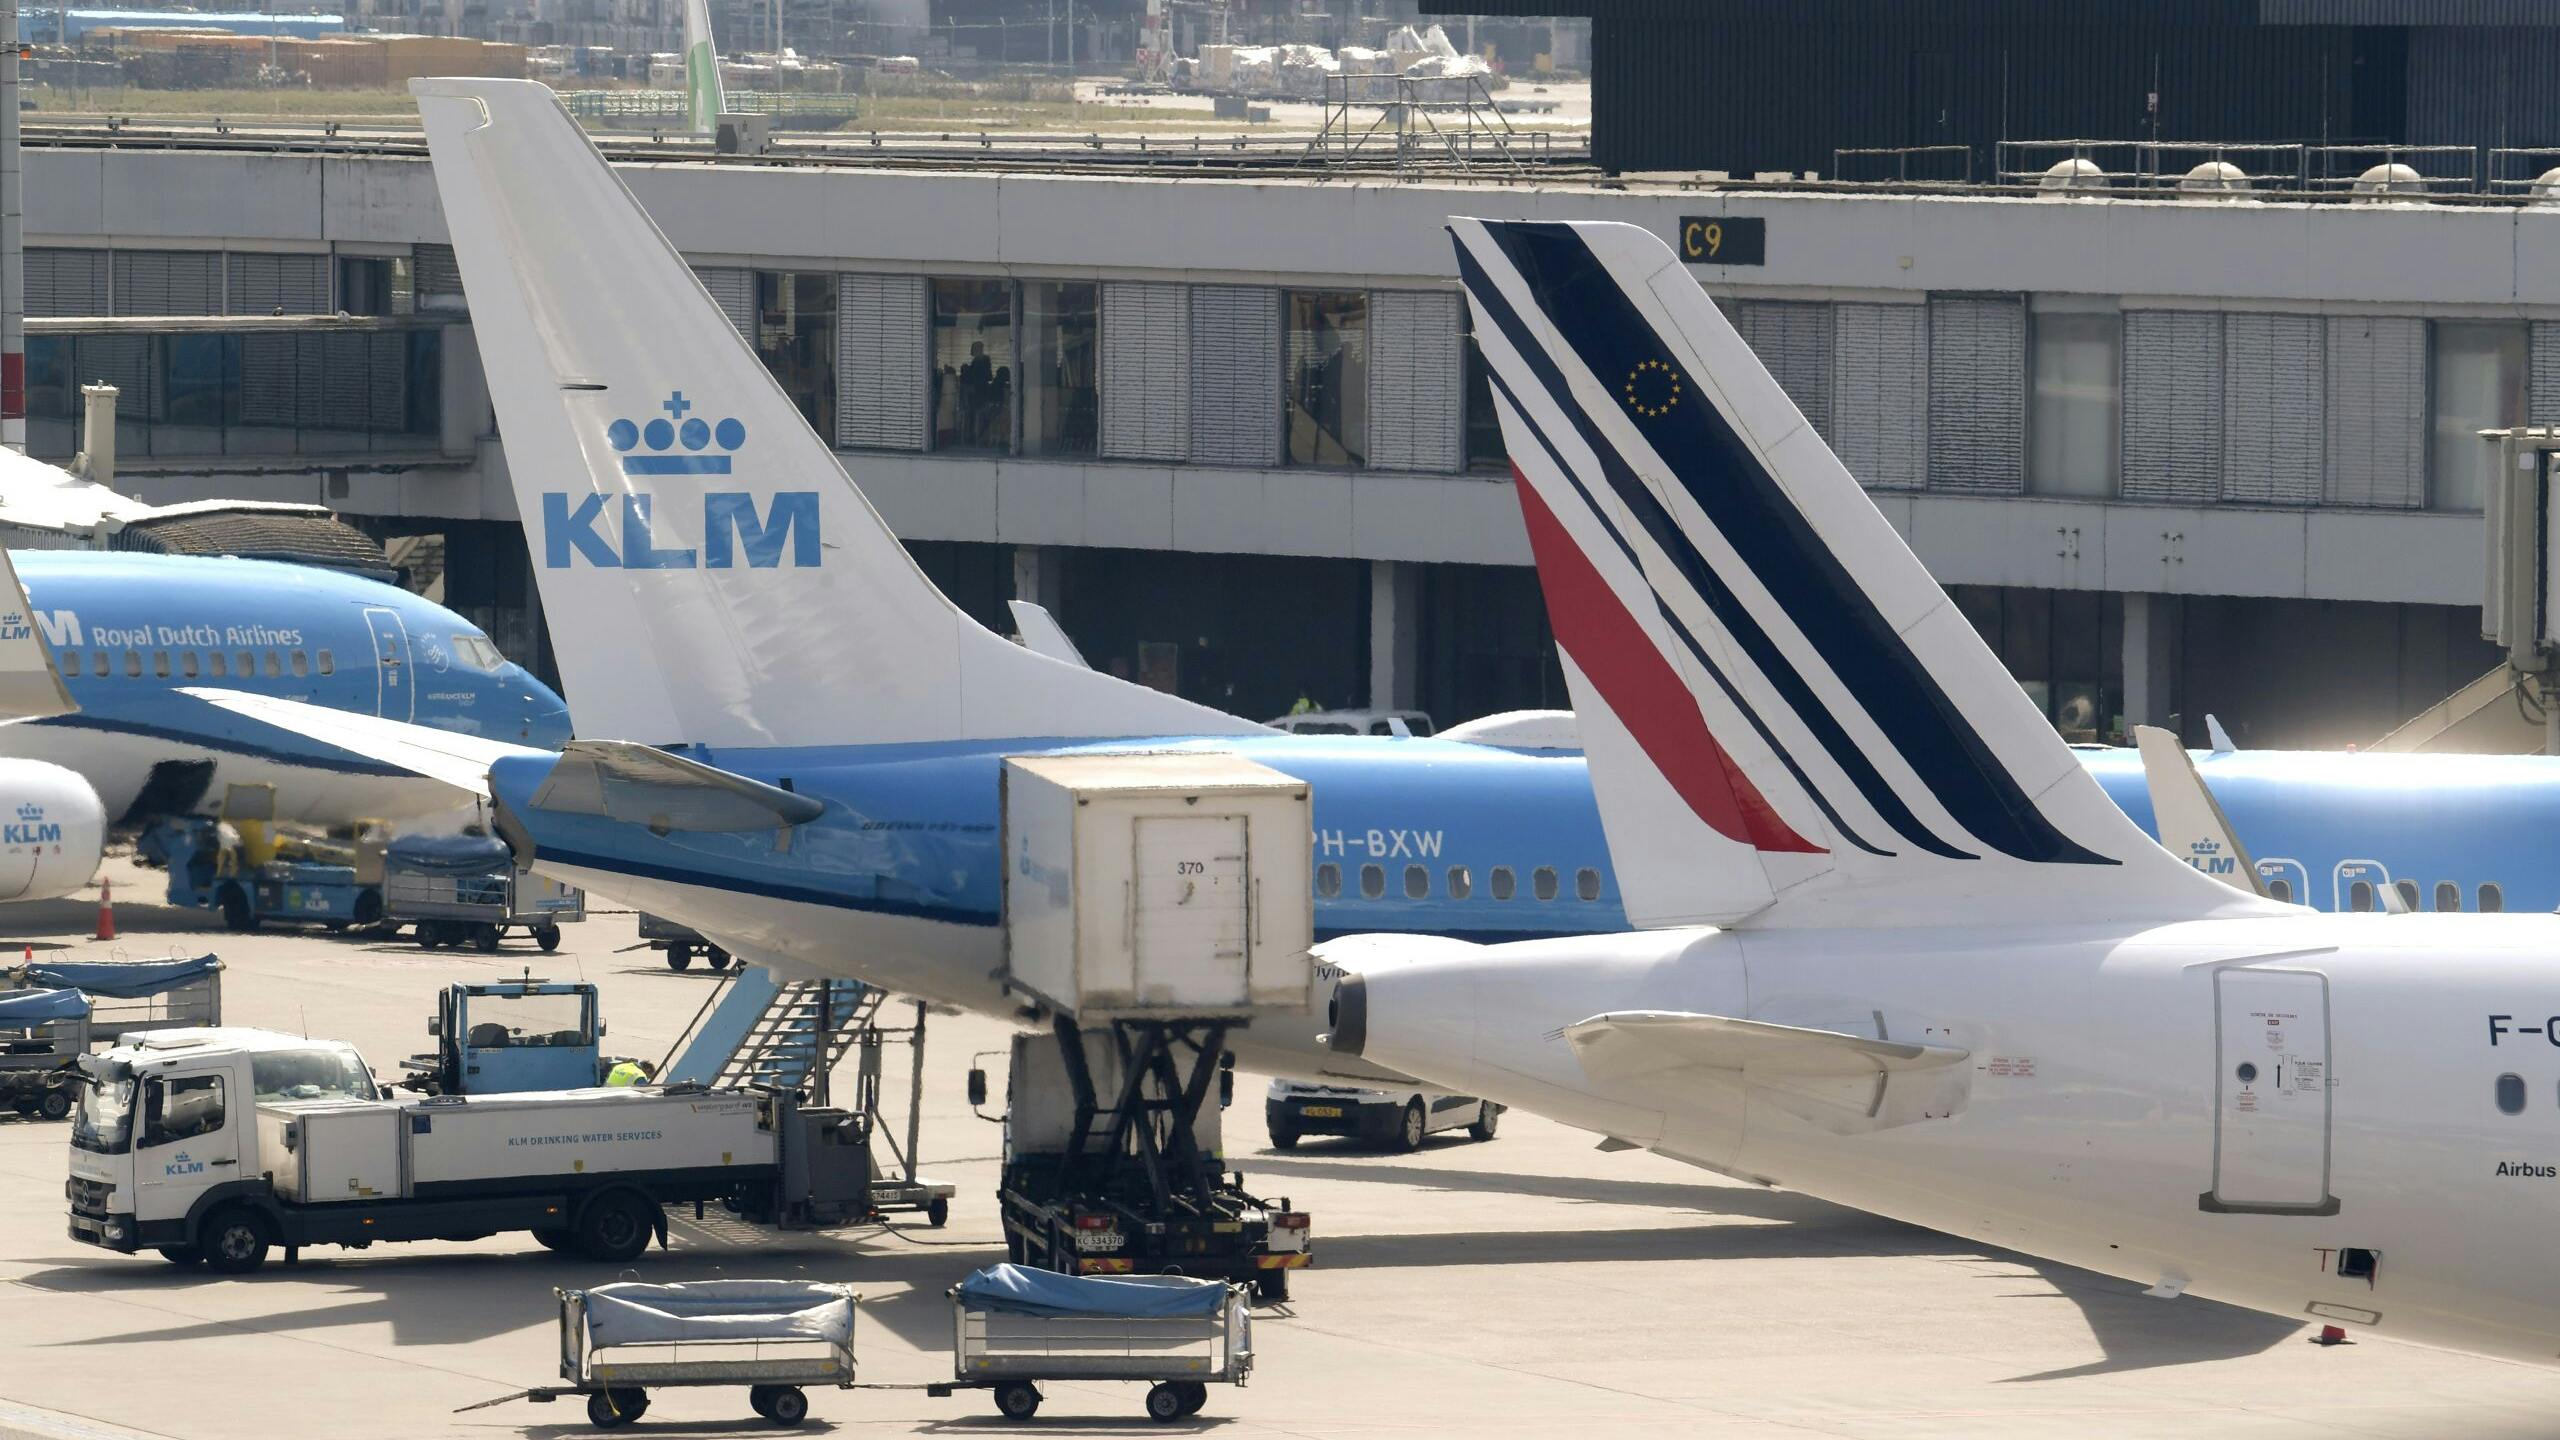 Vliegtuigen van KLM en Air France op de platformen van Schiphol.